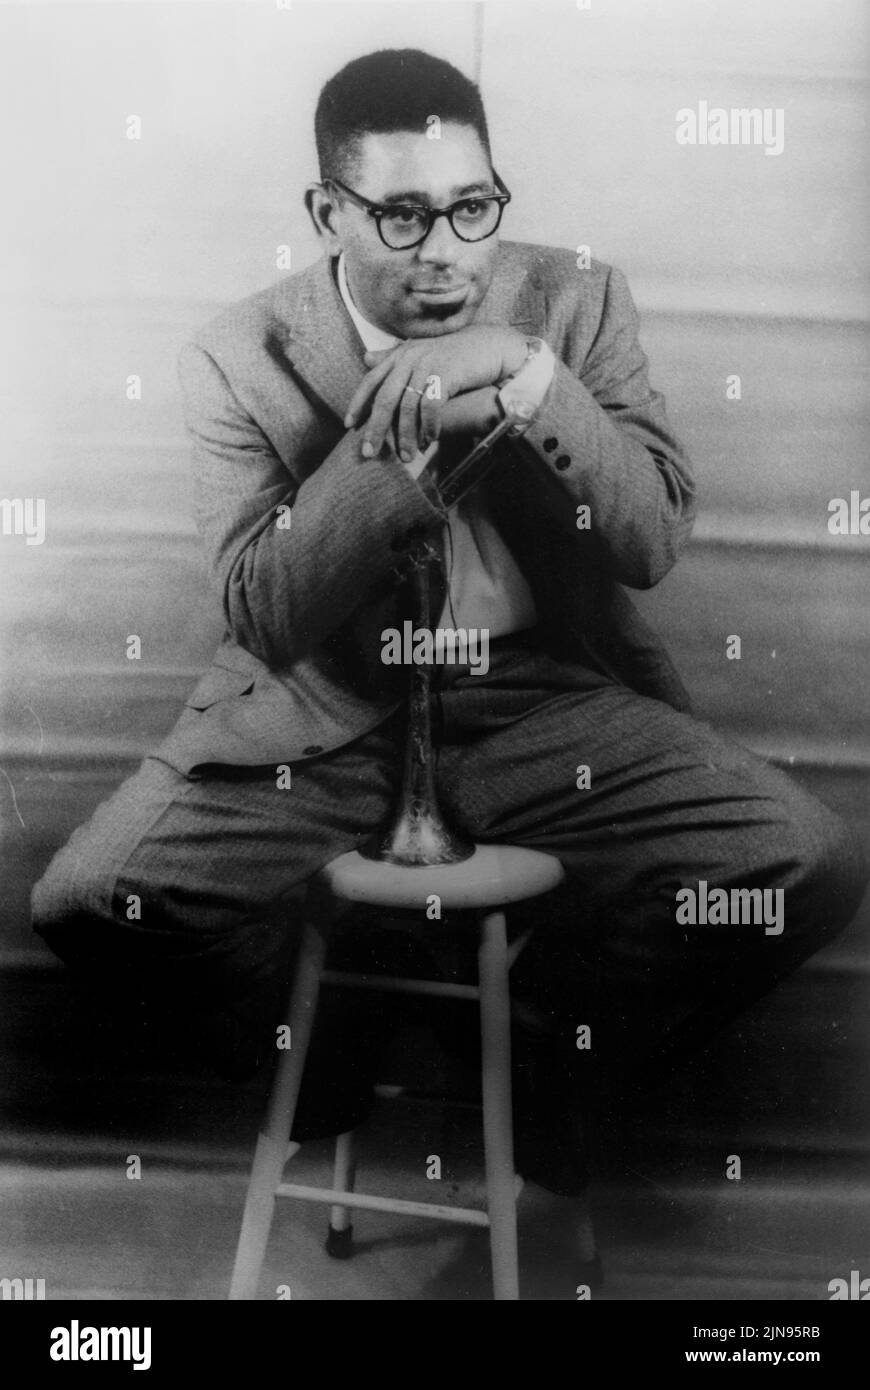 Stati Uniti d'America -- 02 dic 1955 -- il ritratto del musicista jazz Dizzy Gillespie (John Birks) -- Immagine da Carl van Vechten/Atlas Archivio foto Foto Stock